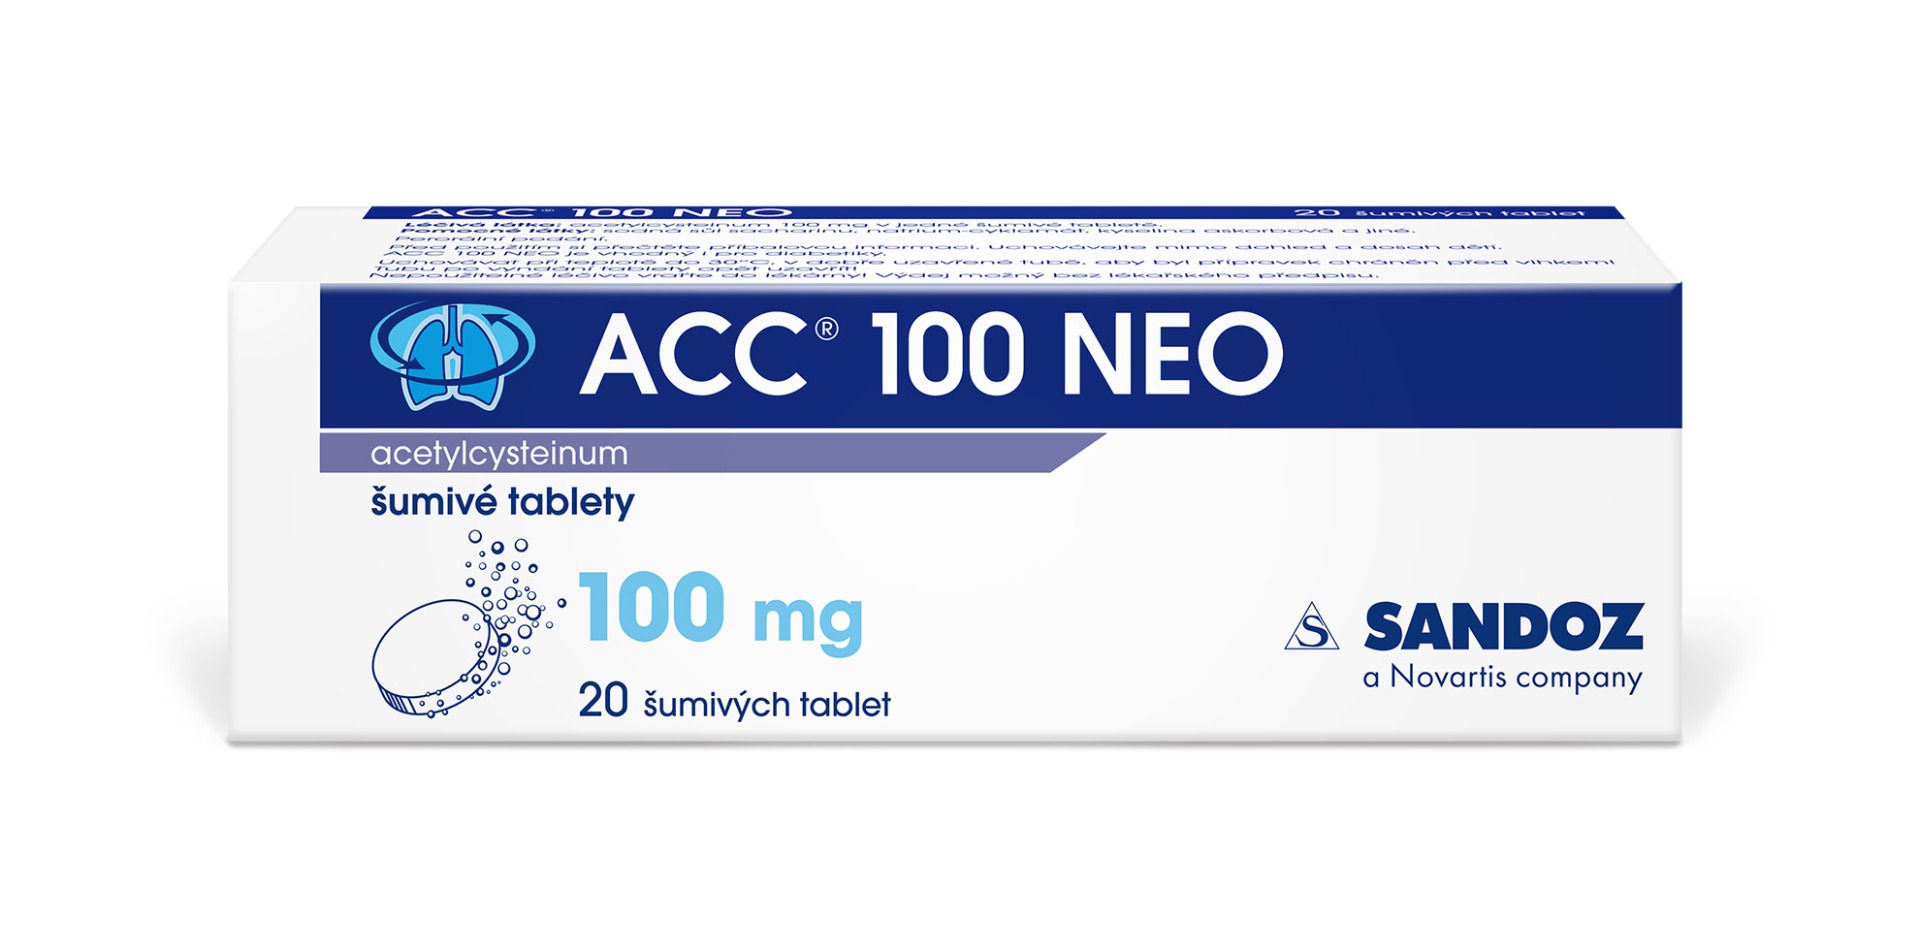 ACC 100 NEO 100 mg 20 šumivých tablet ACC